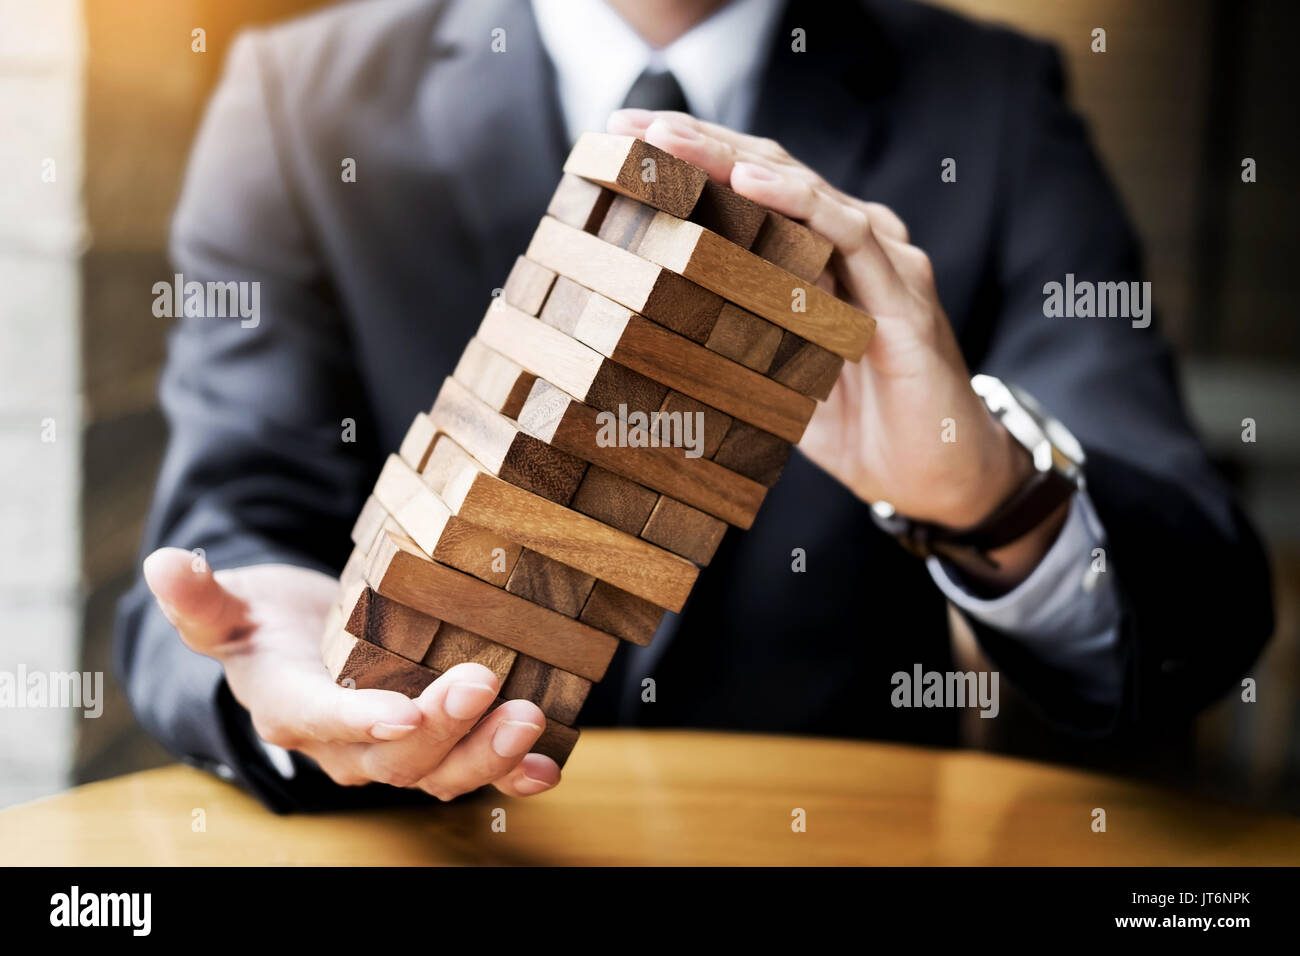 La planification, Risque et stratégie patrimoniale en concept d'entreprise, homme d'affaires et de l'assurance de placer le jeu de cubes en bois sur un tour. Banque D'Images